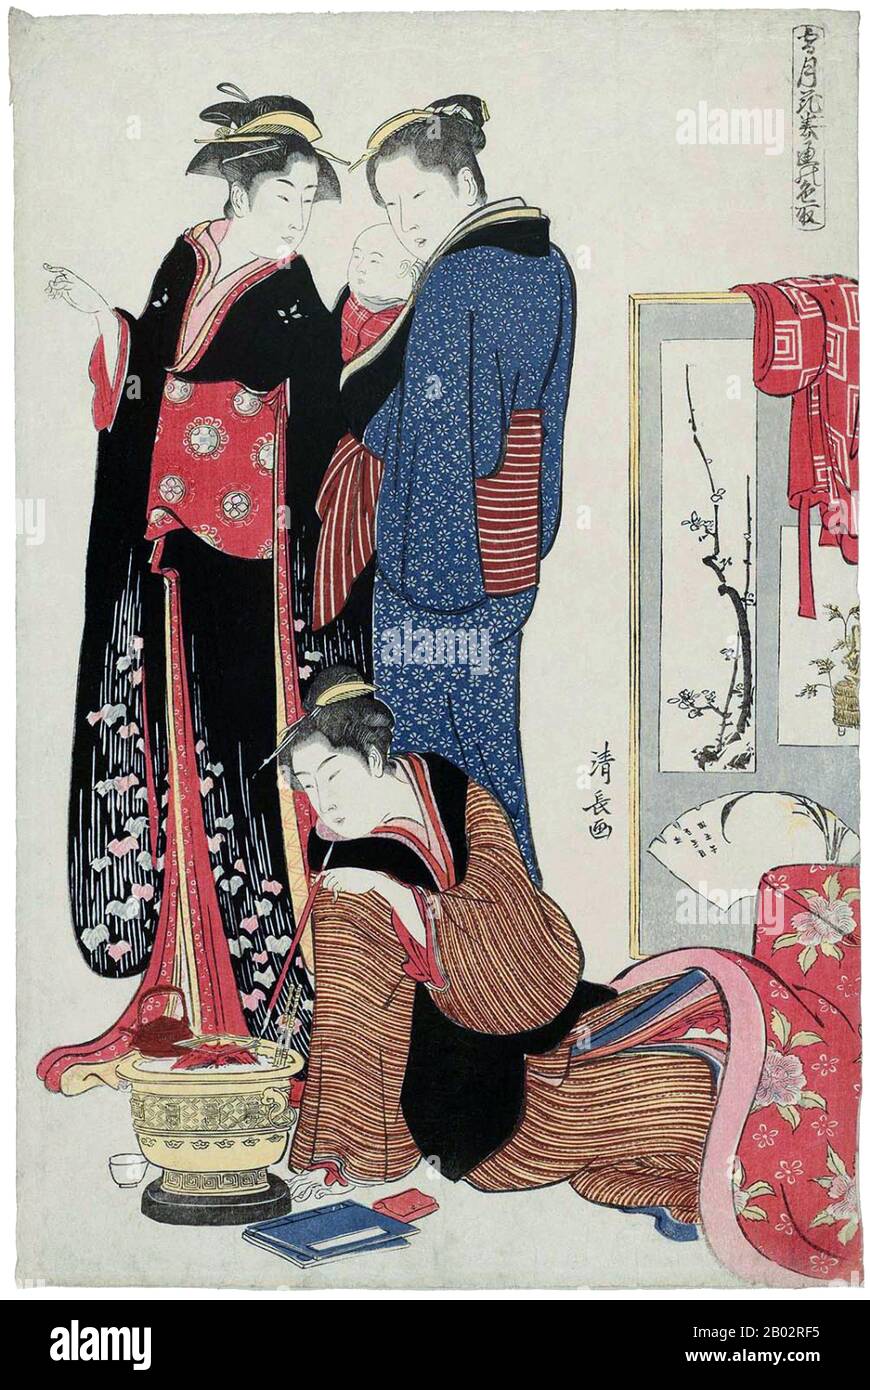 Torii Kiyonaga (鳥居 清長, 1752 - 28. Juni 1815) war ein japanischer Ukiyo-e-Printer und Maler der Torii-Schule. Ursprünglich hatte Sekiguchi Shinsuke, der Sohn eines Edo-Buchhändlers, Torii Kiyonaga als Kunstnamen (gō) übernommen. Obwohl er nicht biologisch mit der Familie Torii verwandt ist, wurde er nach dem Tod seines Adoptivvaters und Lehrers Torii Kiyomitsu Gruppenleiter. Der Meister Kiyomitsu starb im Jahr 1785-858; da sein Sohn jung starb und Kiyotsune, Kiyonagas Senior, ein weniger vielversprechender Künstler war, war Kiyonaga die offensichtliche Wahl, Kiyomitsu als Nachfolger der Leitung der Torii-Schule zu führen. Er dela jedoch Stockfoto